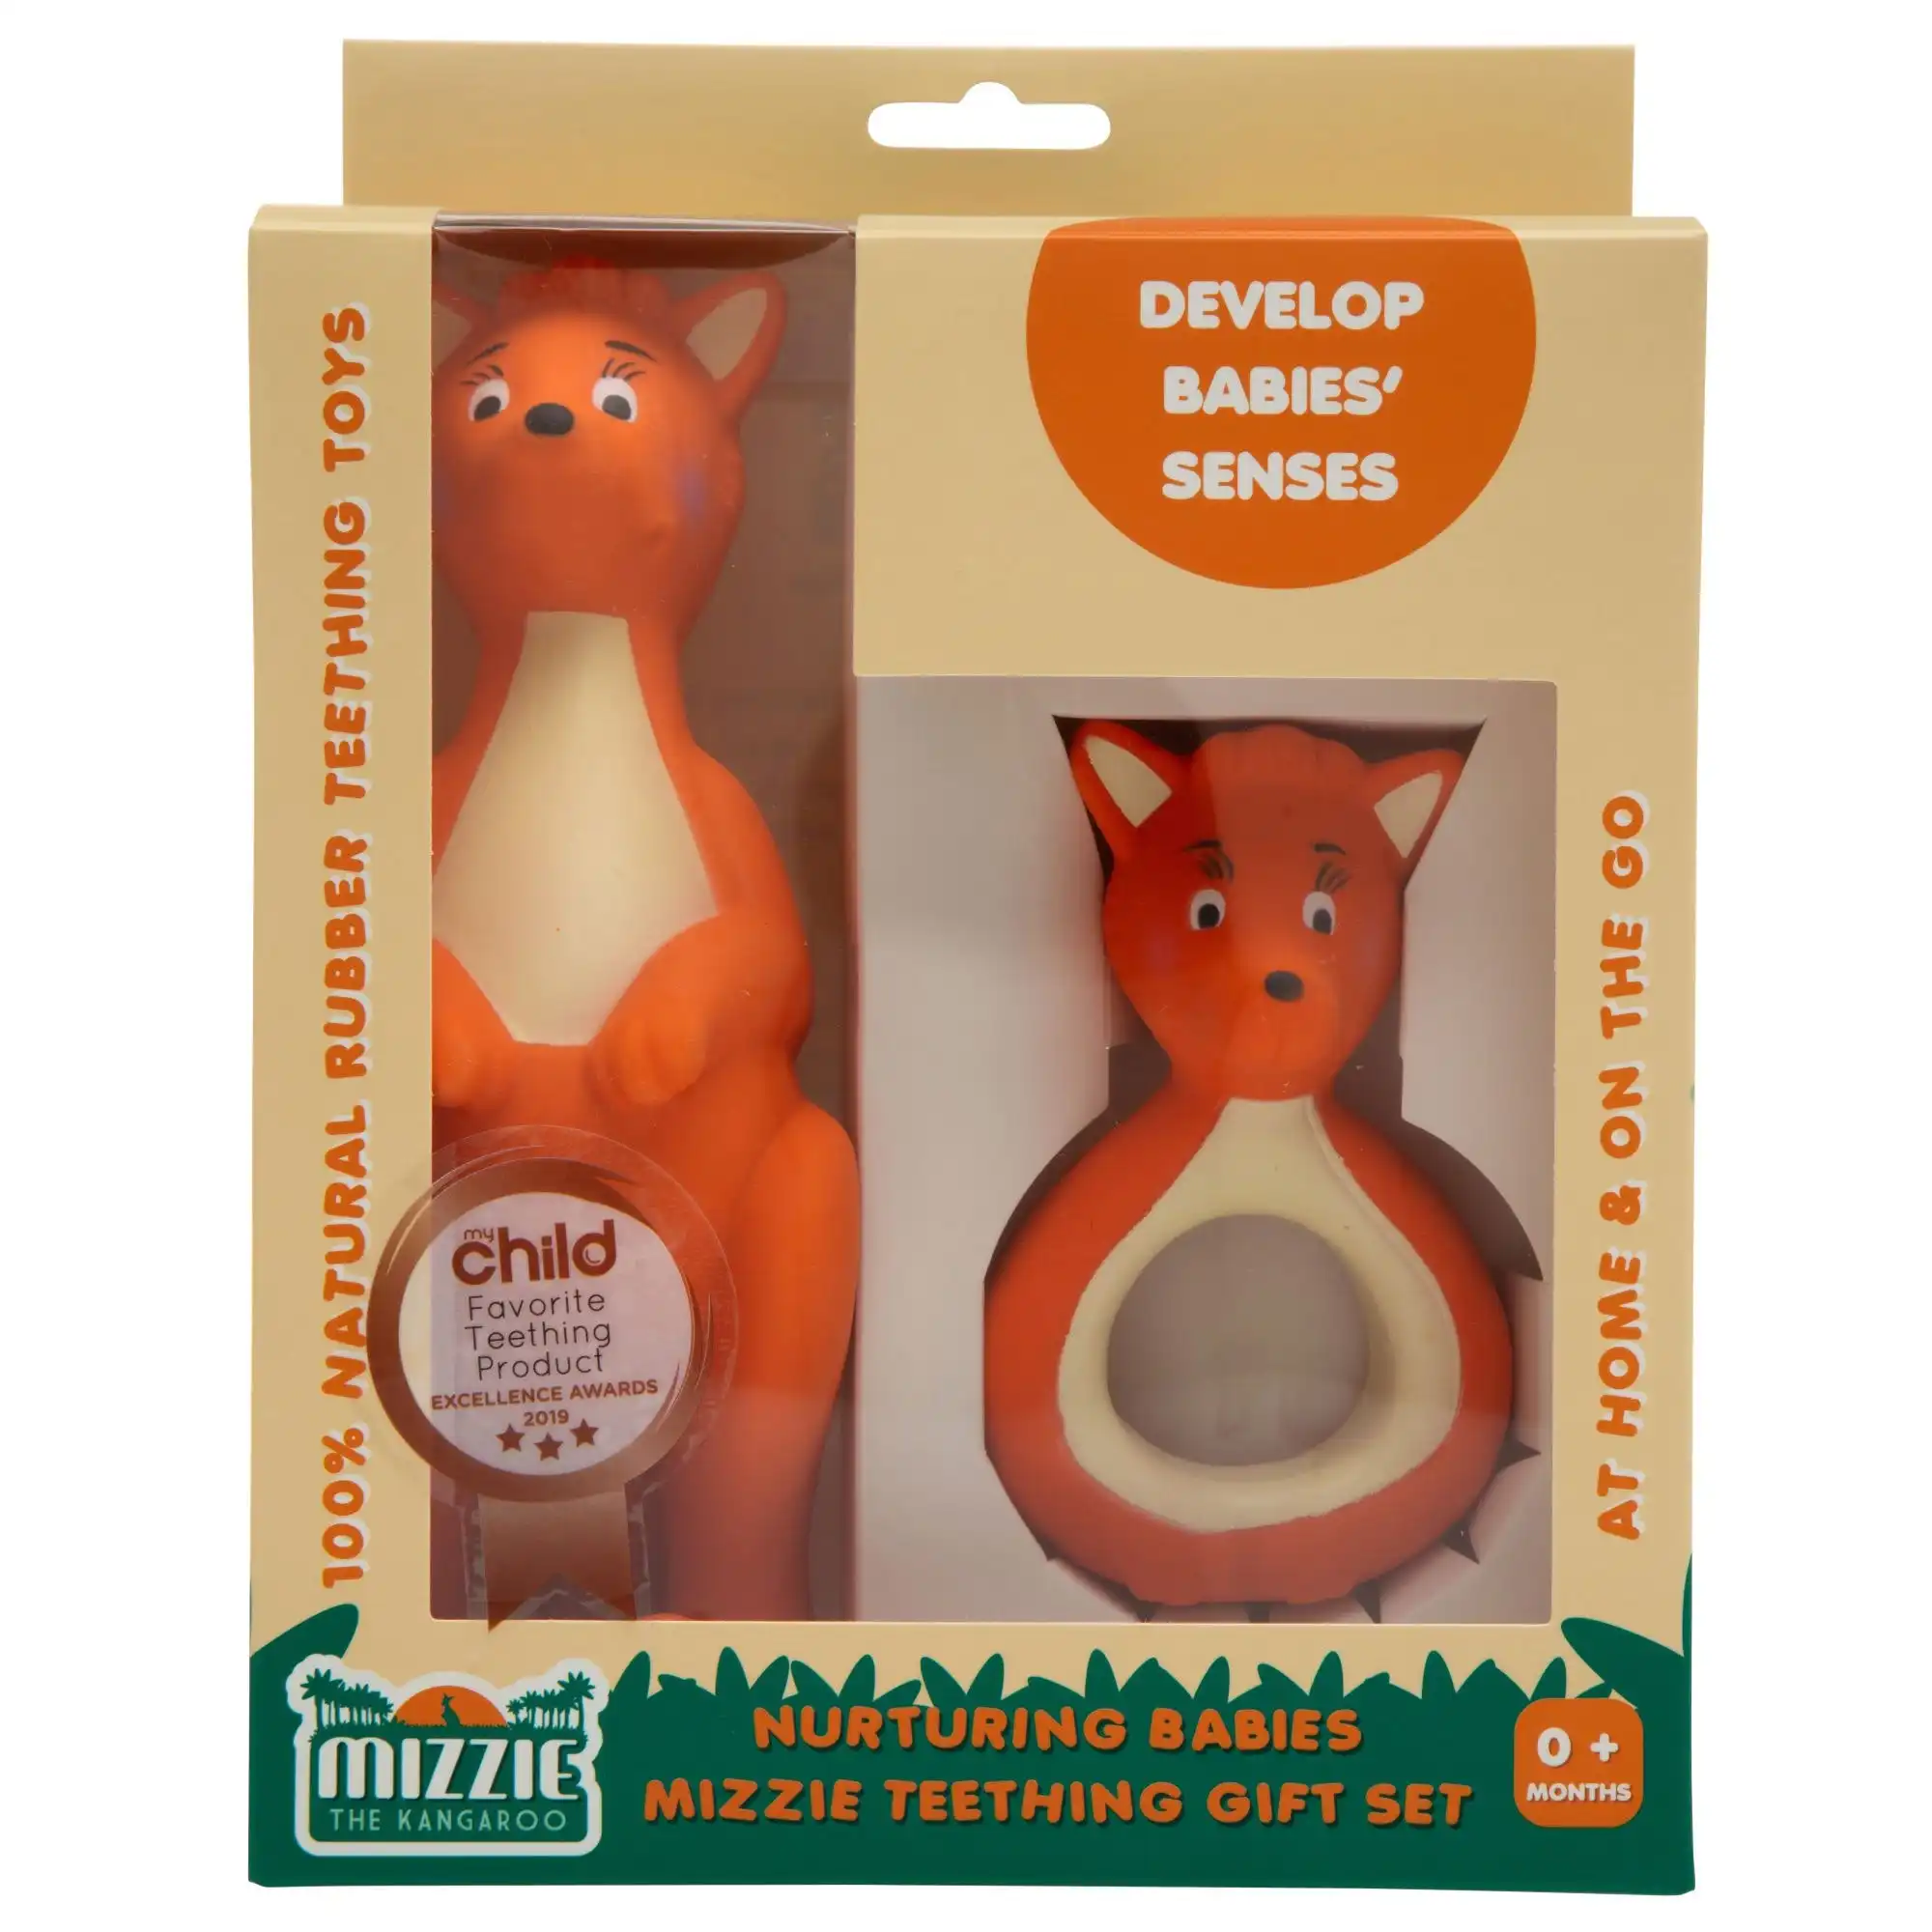 Mizzie The Kangaroo Nurturing Babies Mizzie Teething Gift Set